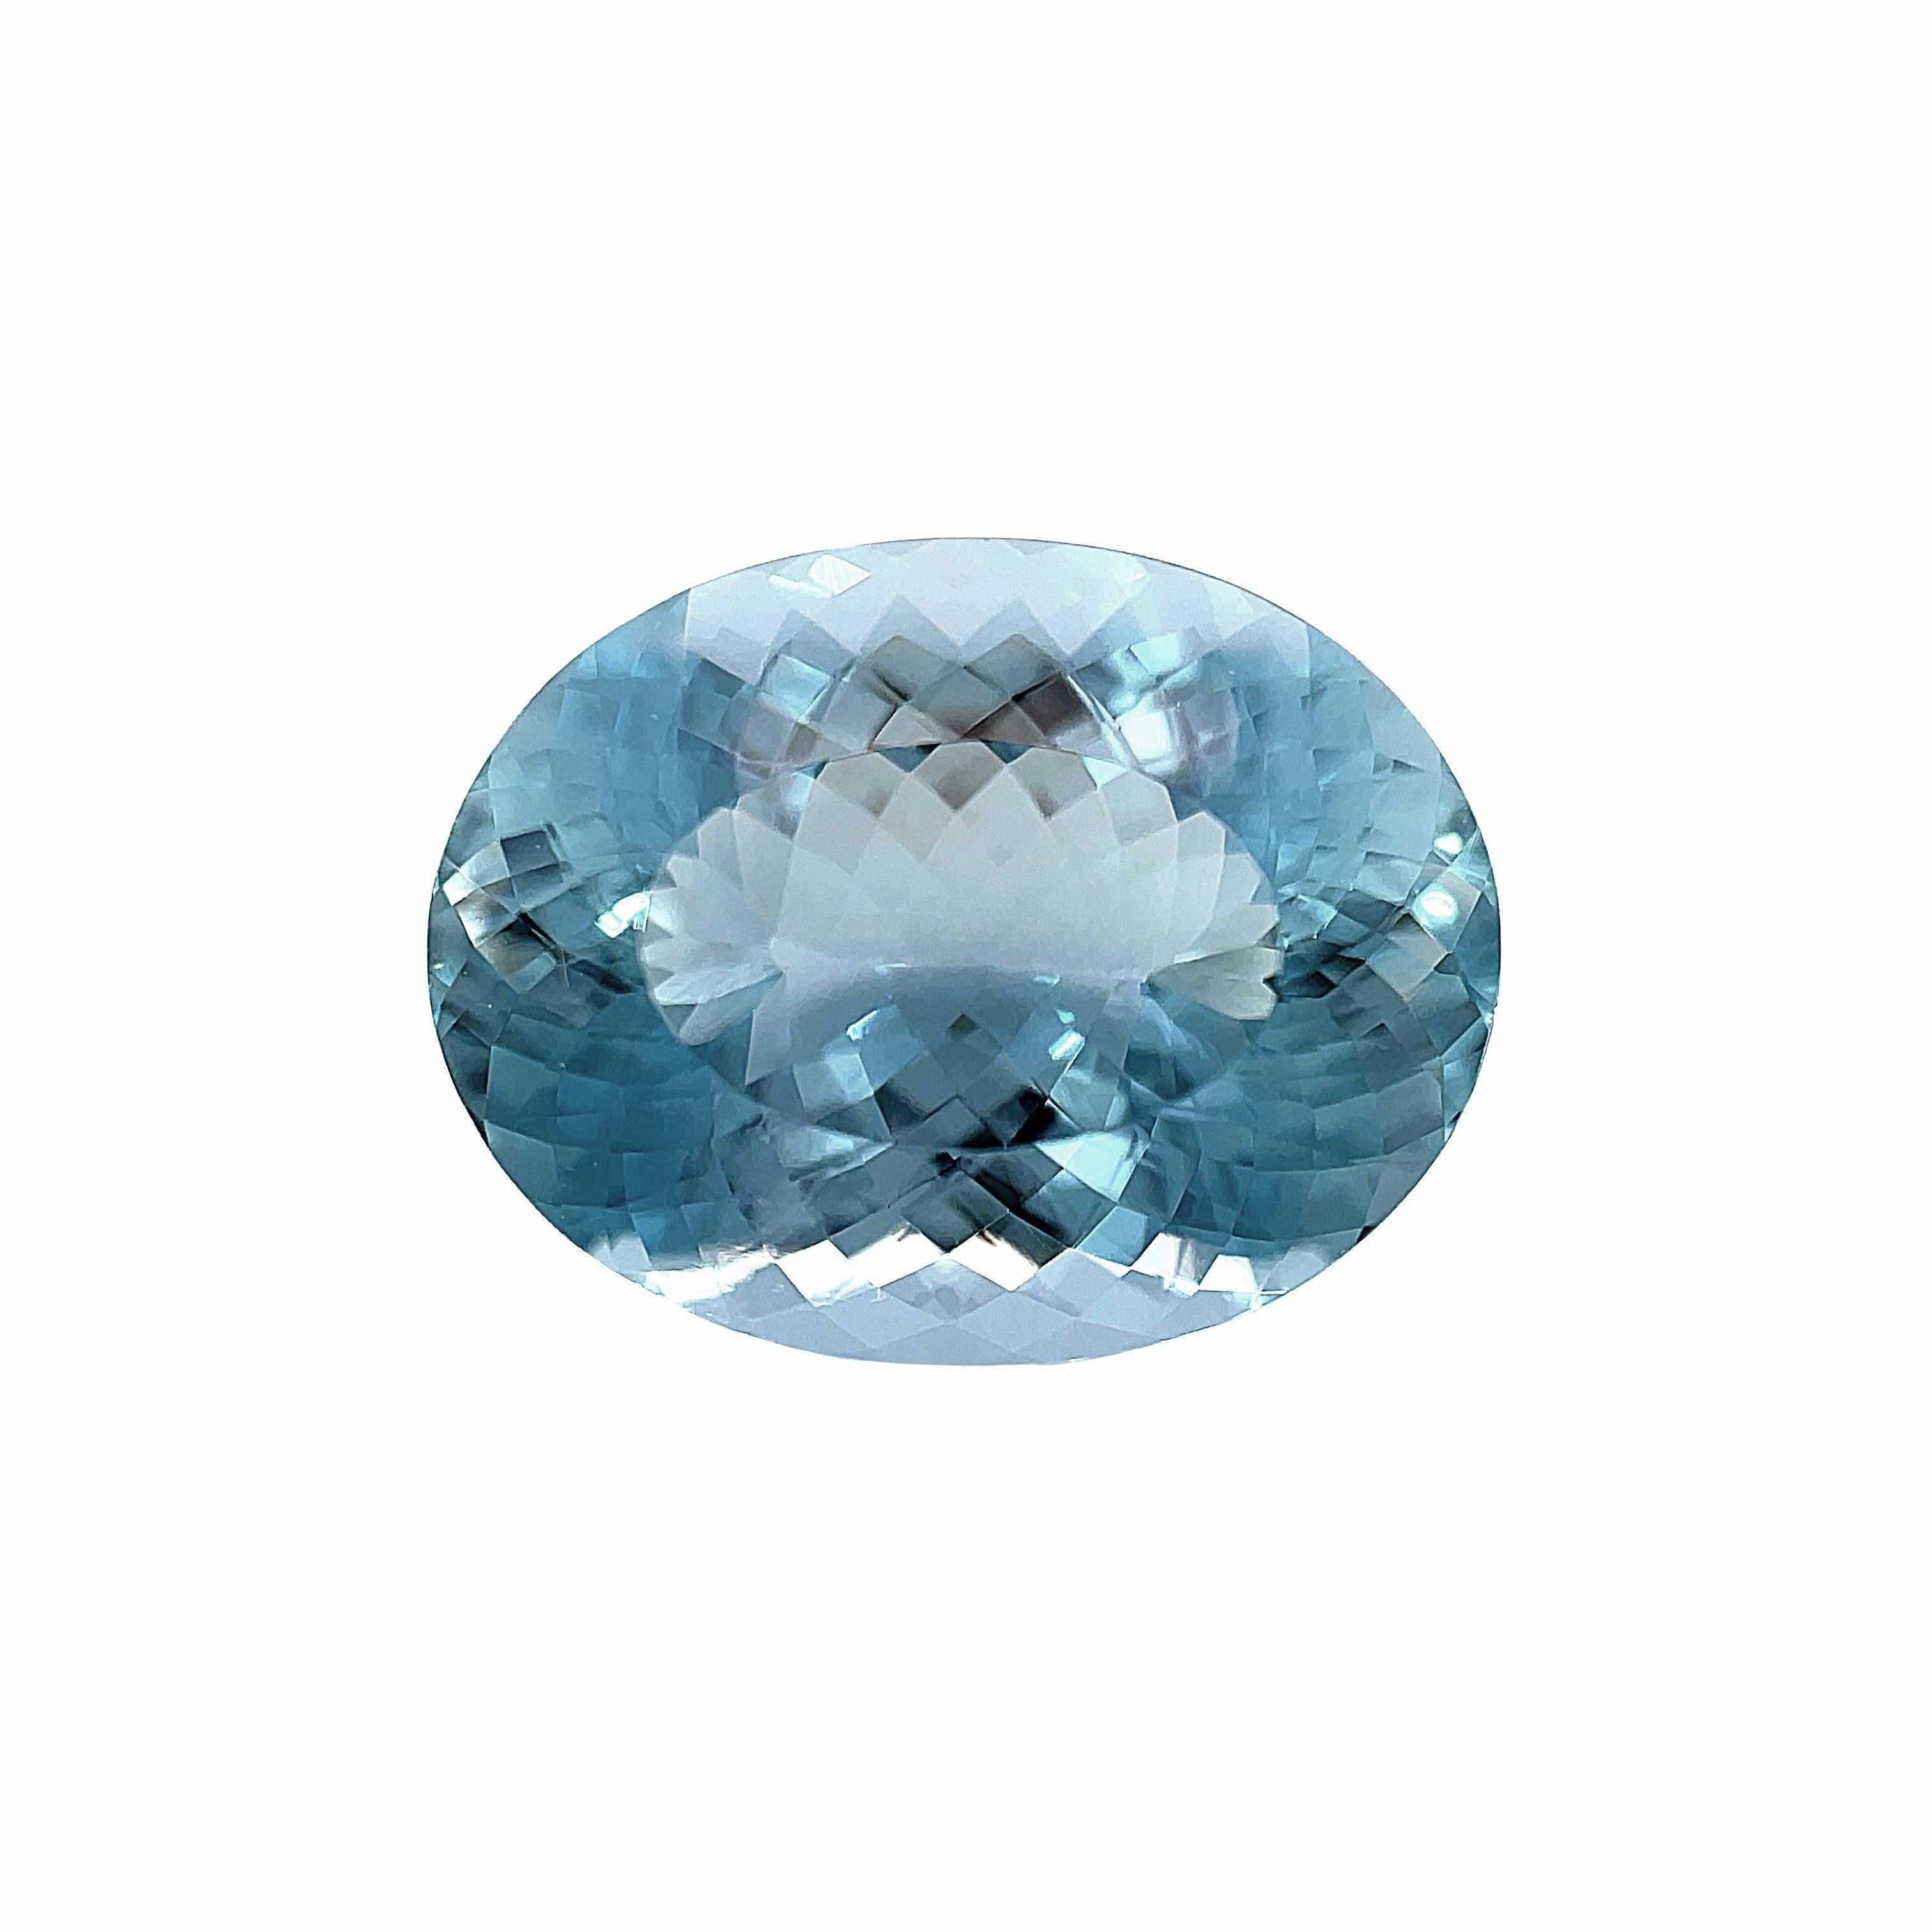 Cette aigue-marine magnifiquement cristalline est un ovale de forme parfaite pesant 7,25 carats et ferait une bague ou un pendentif spectaculaire. Brilliante et facettée avec une vie et un éclat extraordinaires ! La couleur bleue est vive et